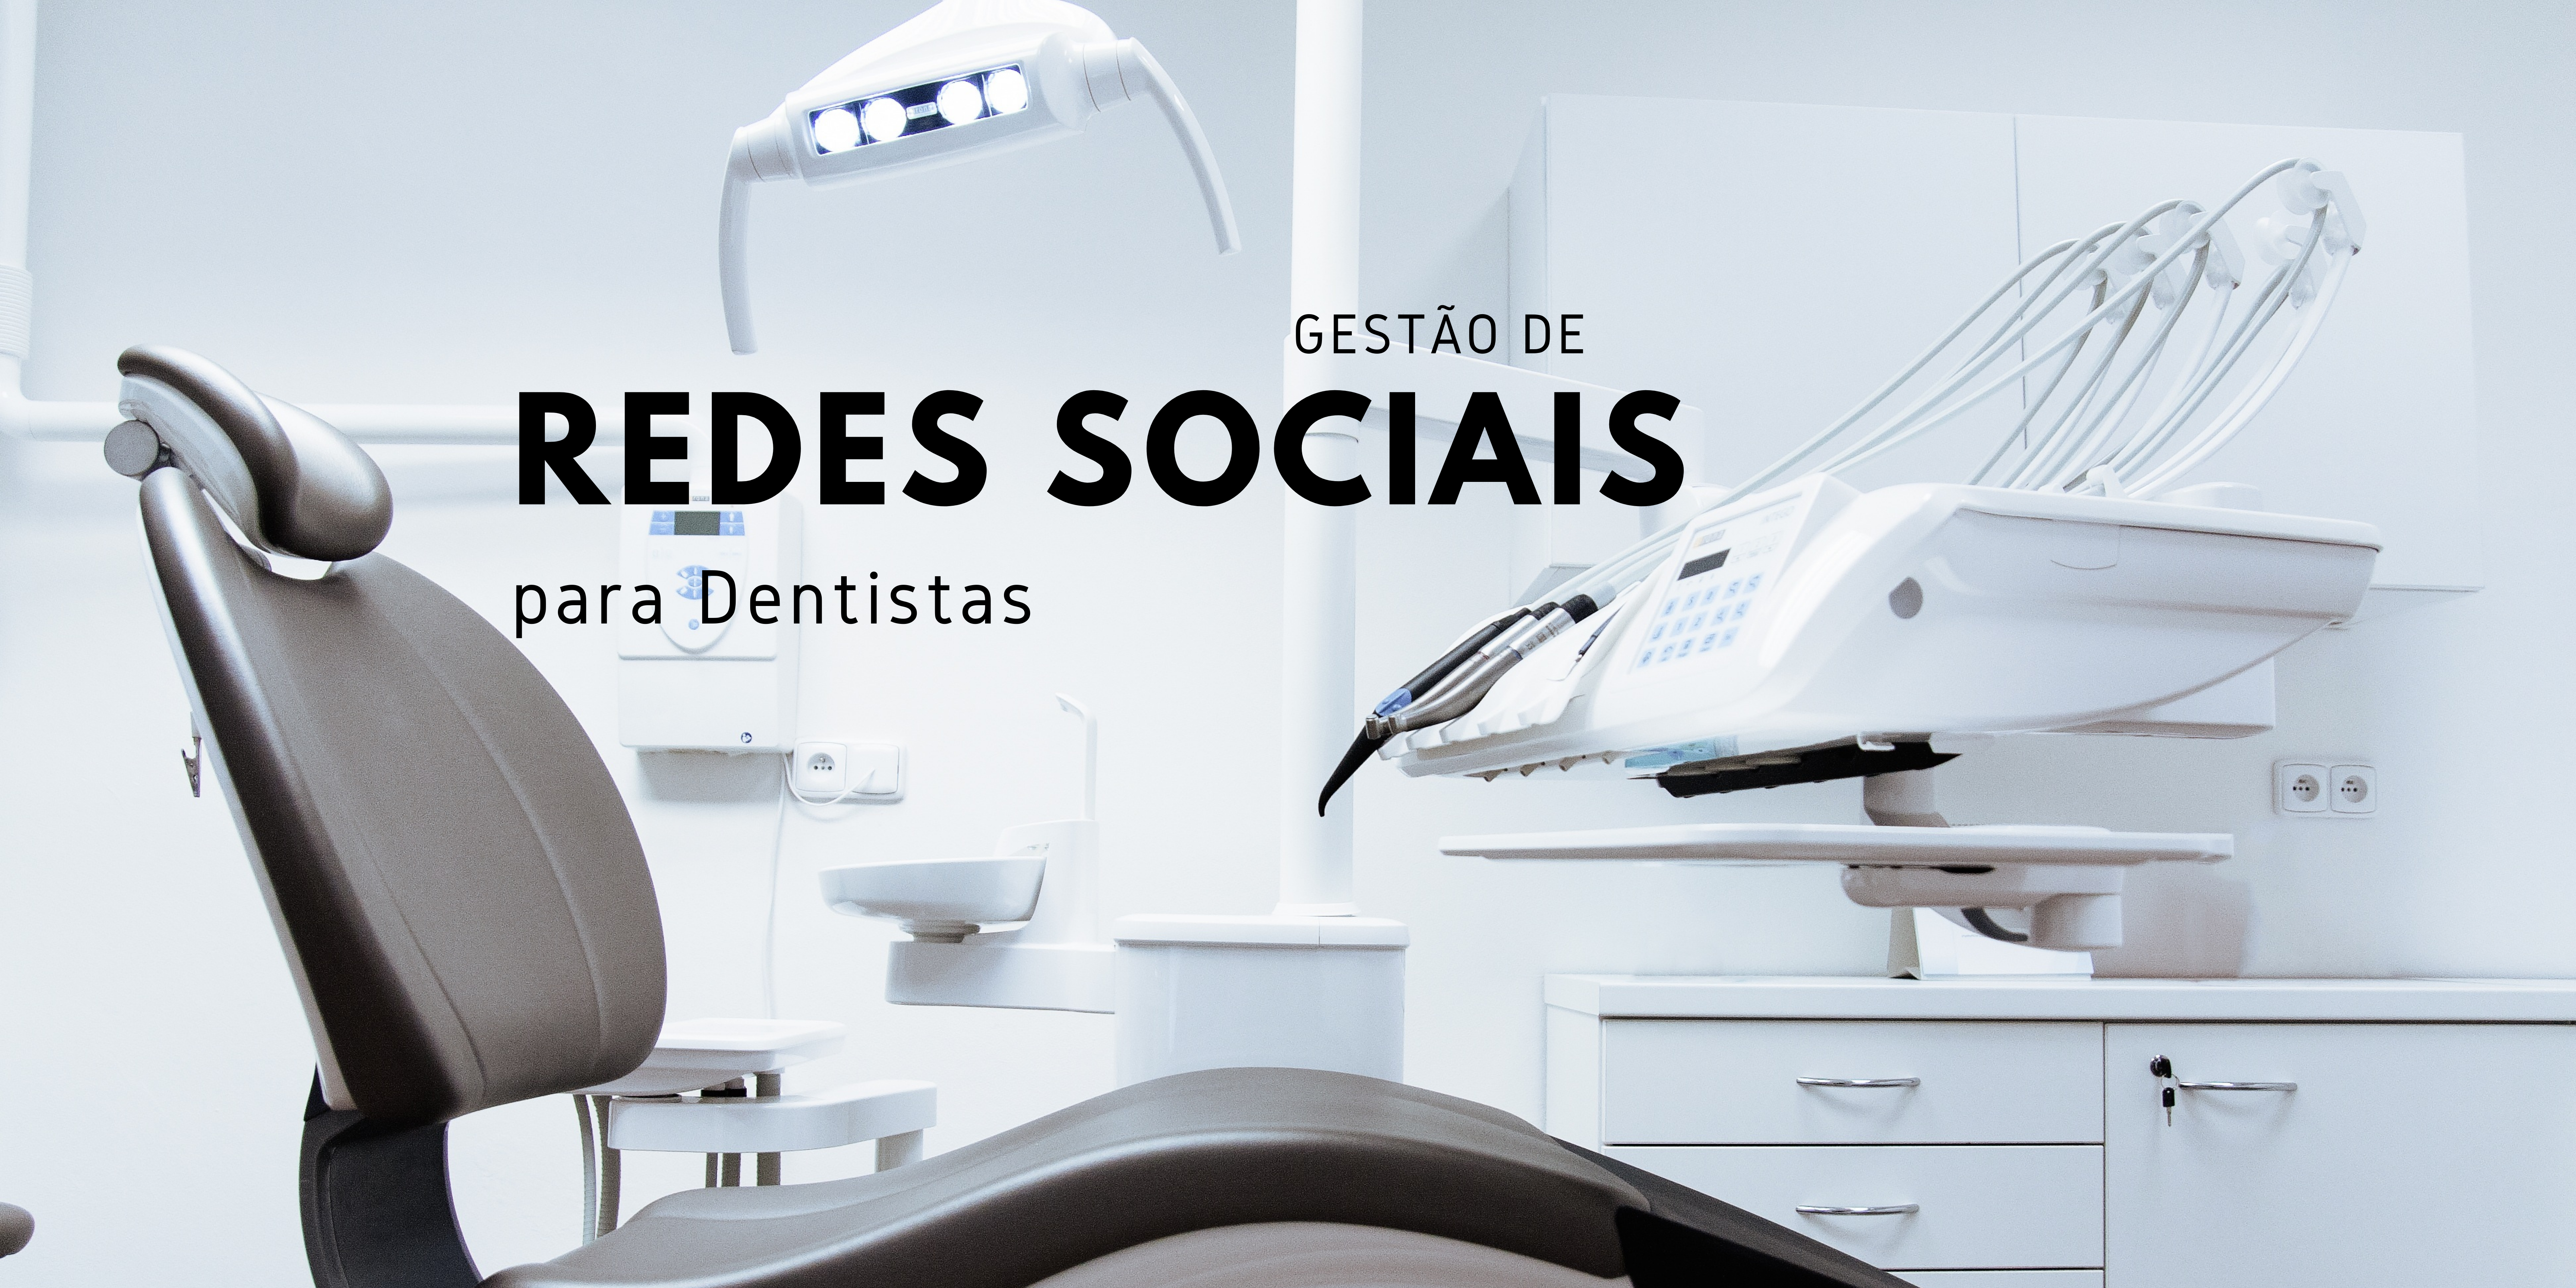 Você está visualizando atualmente Gestão de Redes Sociais para Dentistas com 6 passos